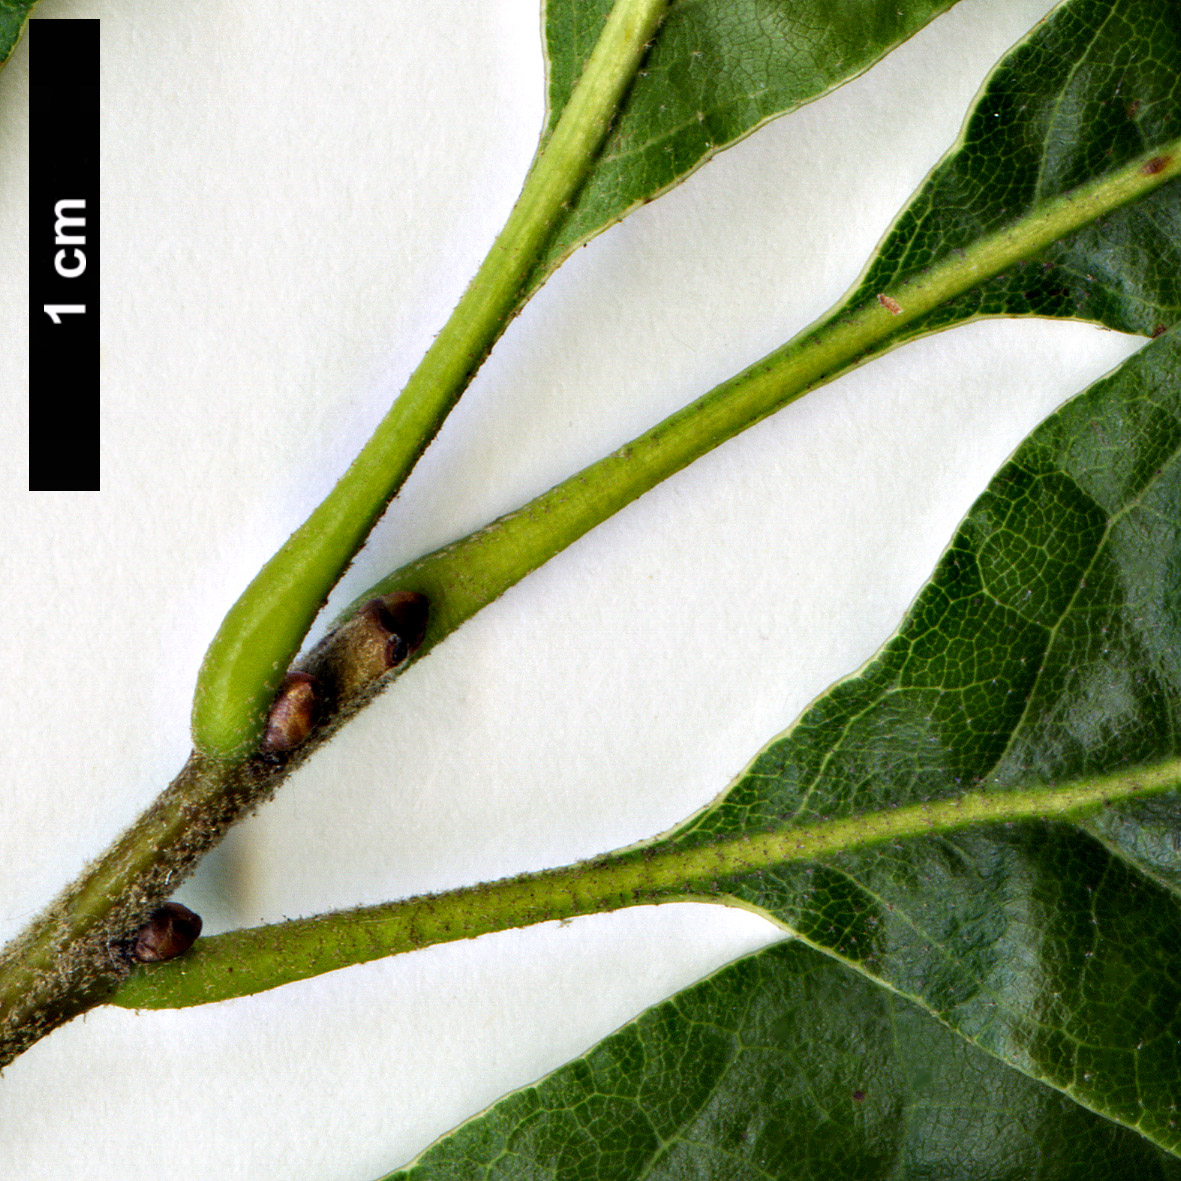 High resolution image: Family: Fagaceae - Genus: Quercus - Taxon: arkansana